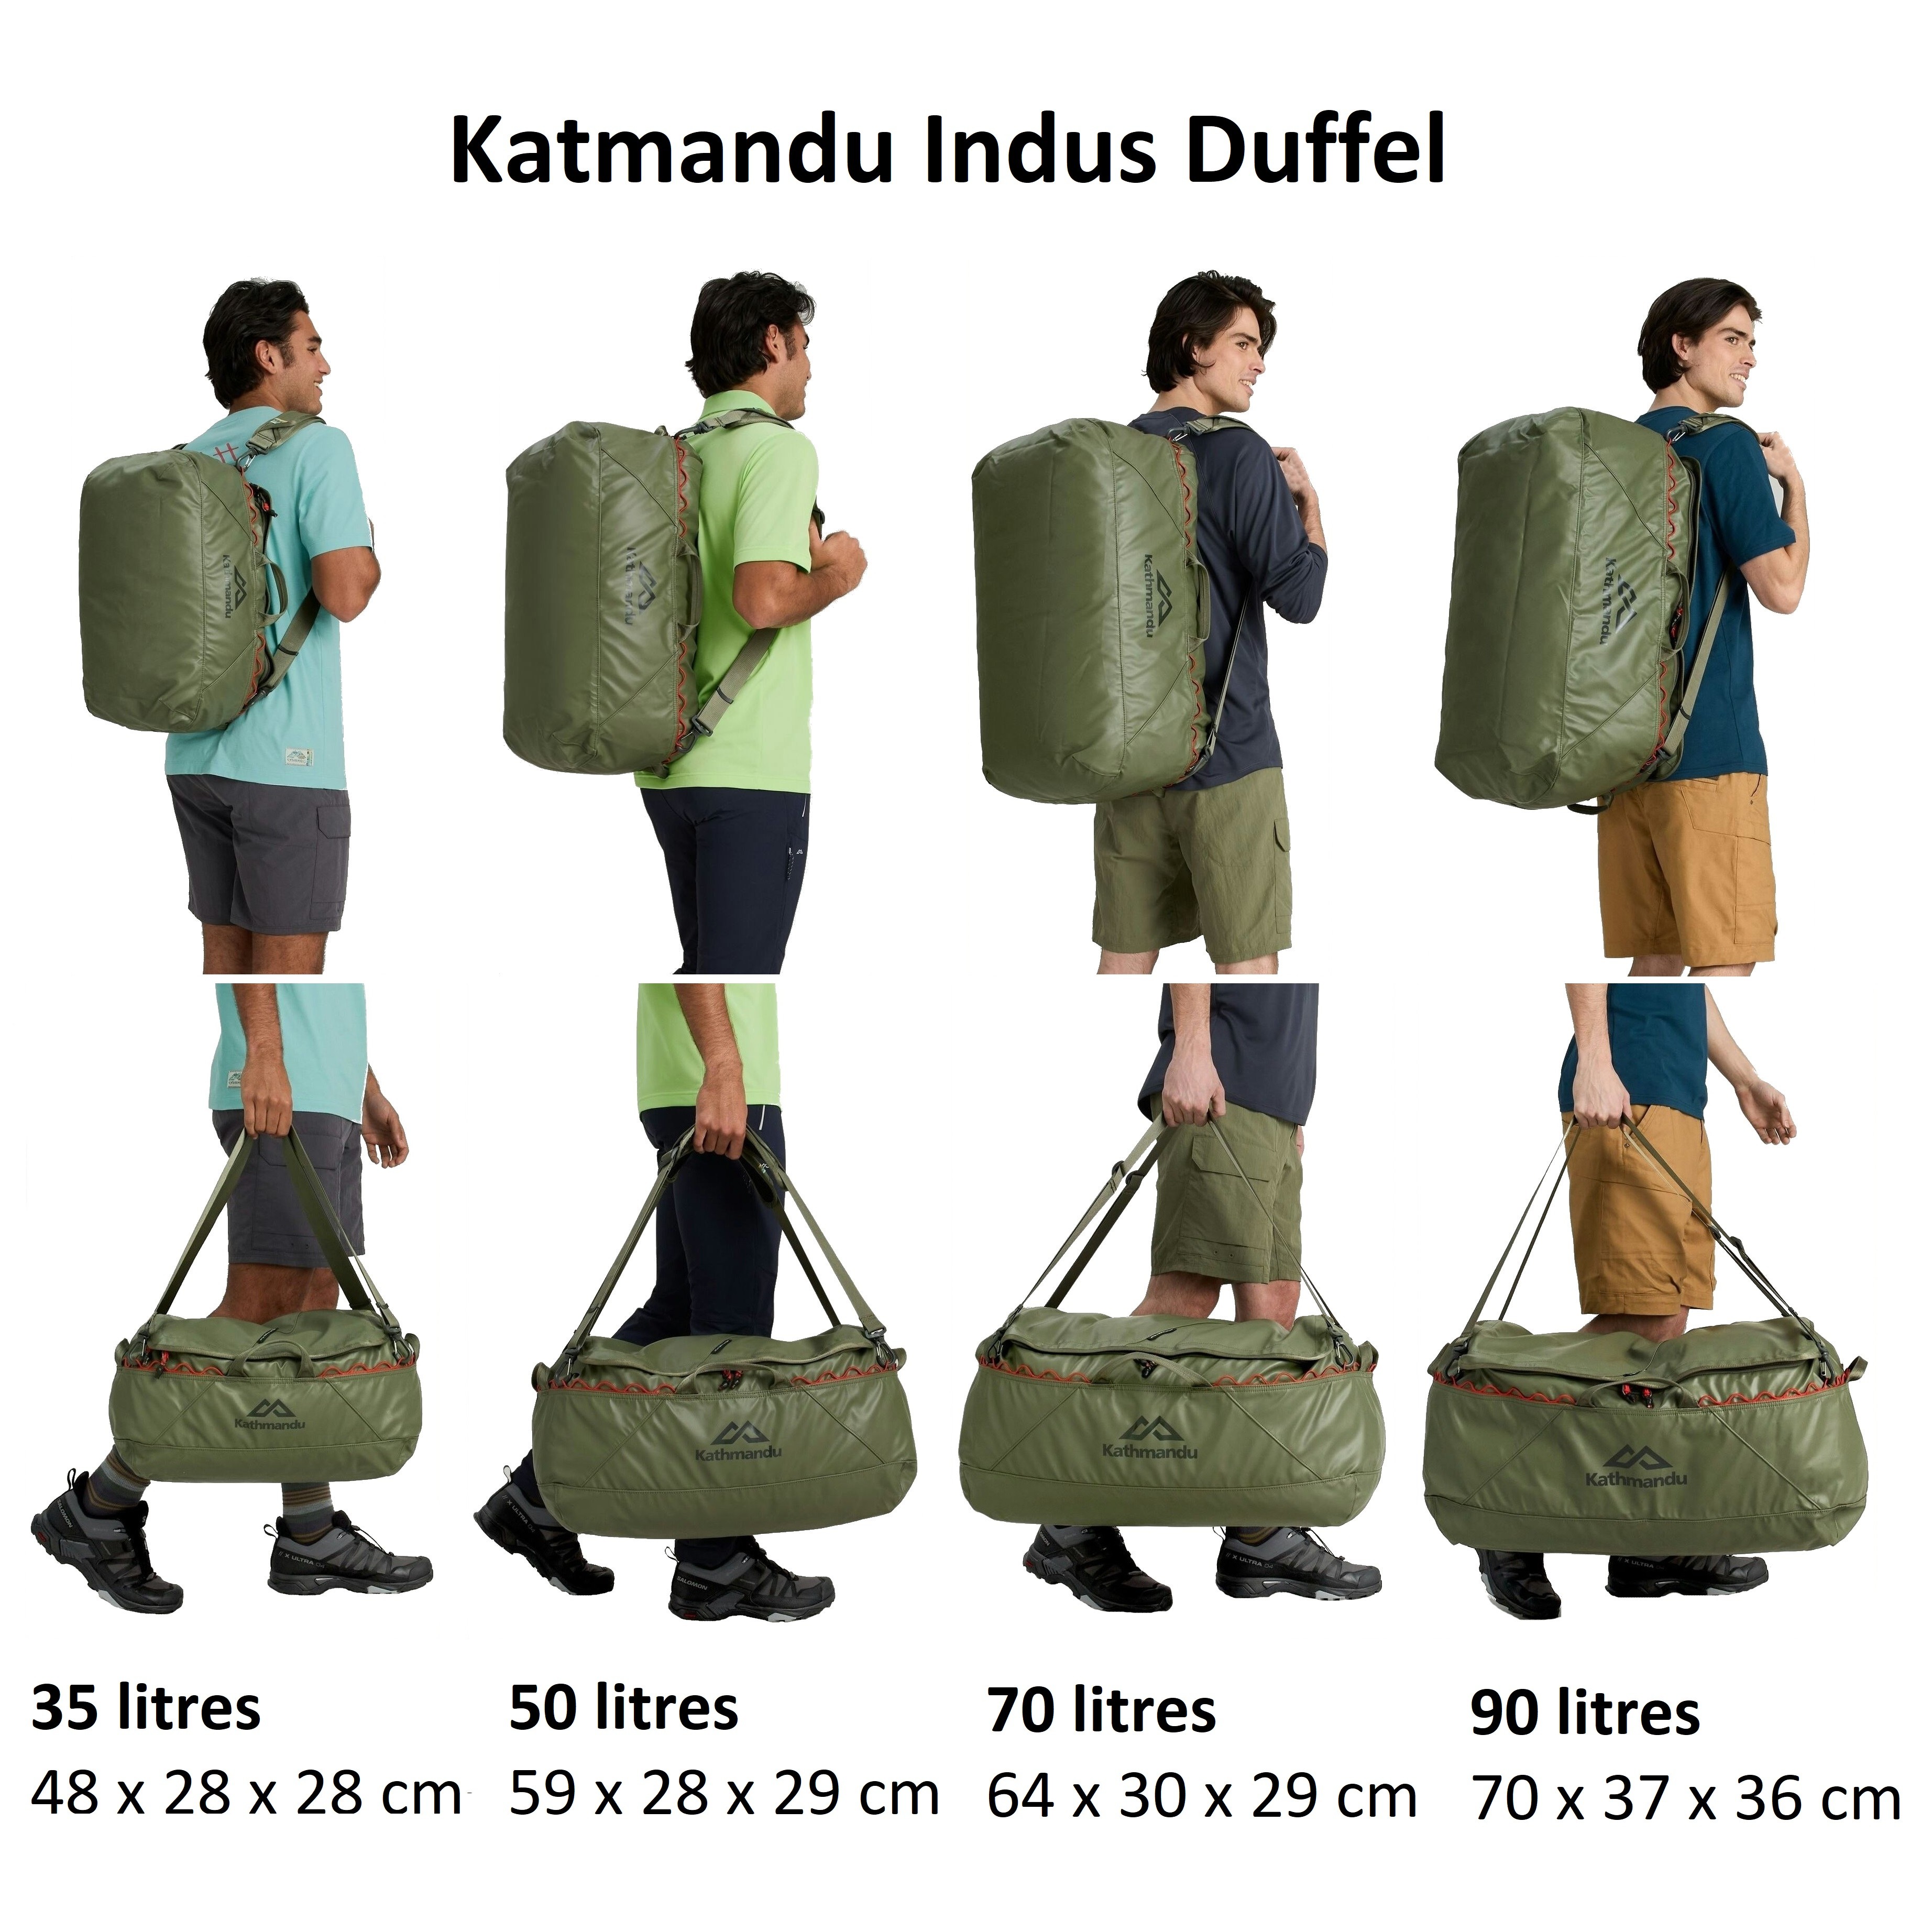 Kathmandu Indus 70 Litres Waterproof Duffel Bag